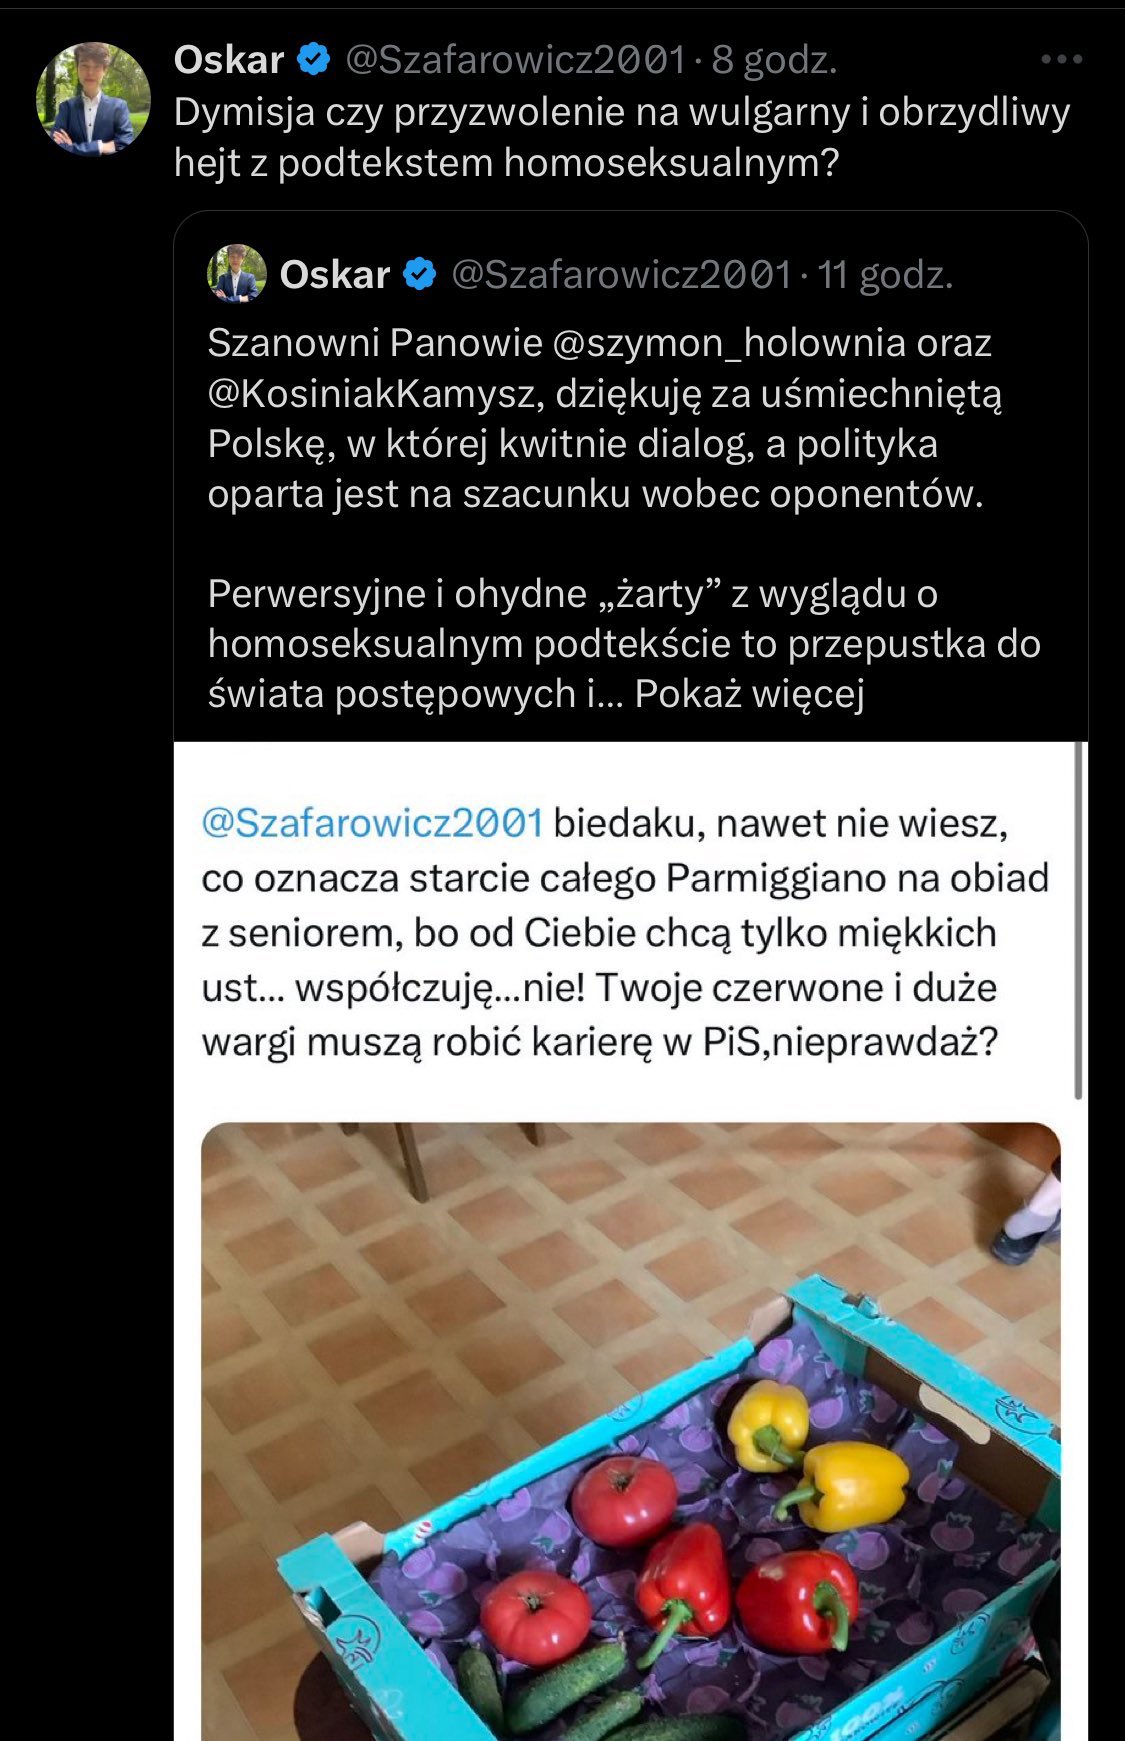 Wpisy Protasiewicza na Twitterze.